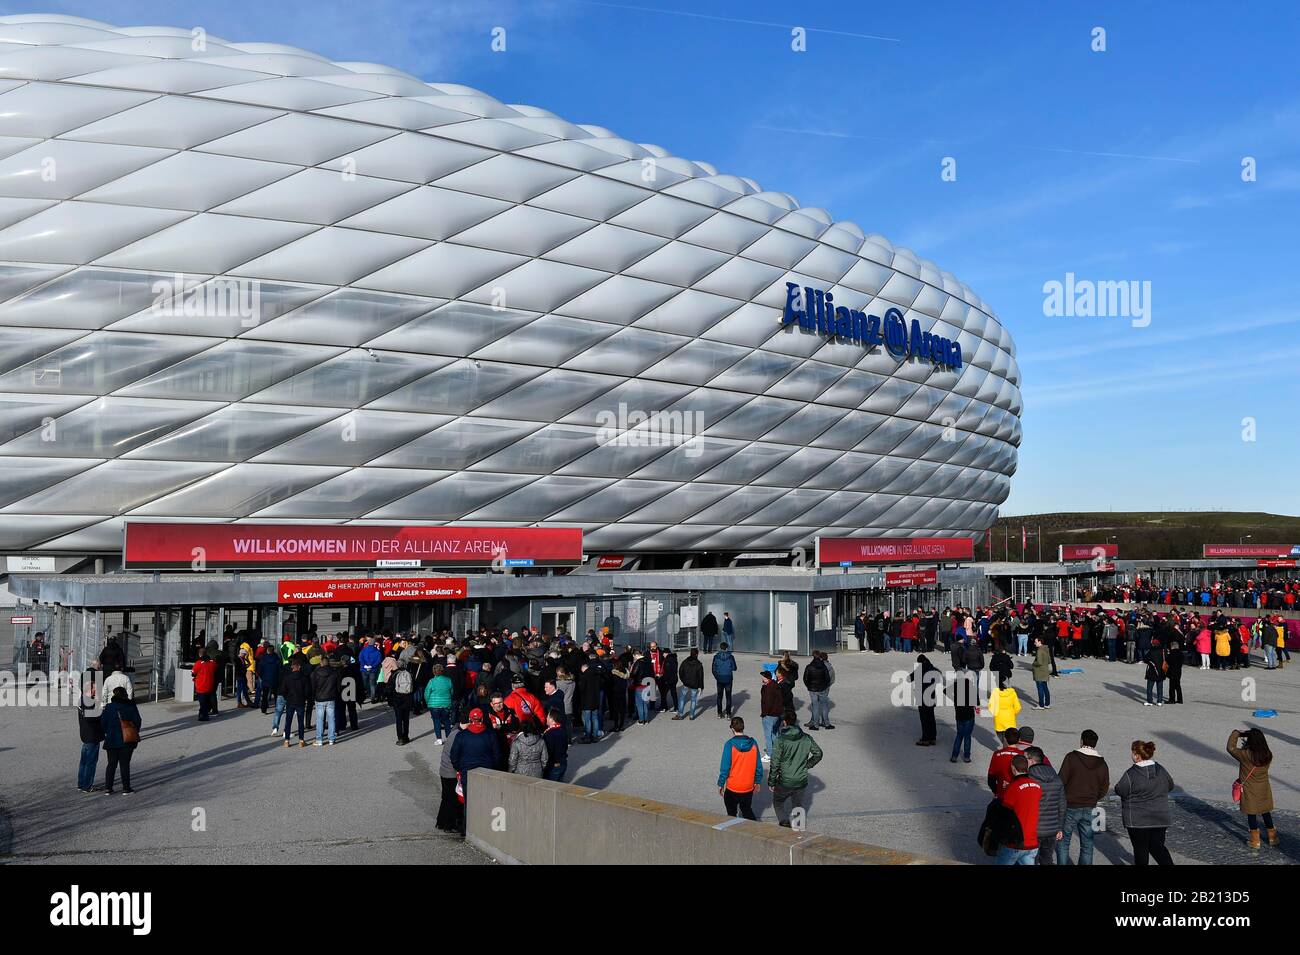 Spectateurs en attente d'entrée, Allianz Arena, Munich, Bavière, Allemagne Banque D'Images